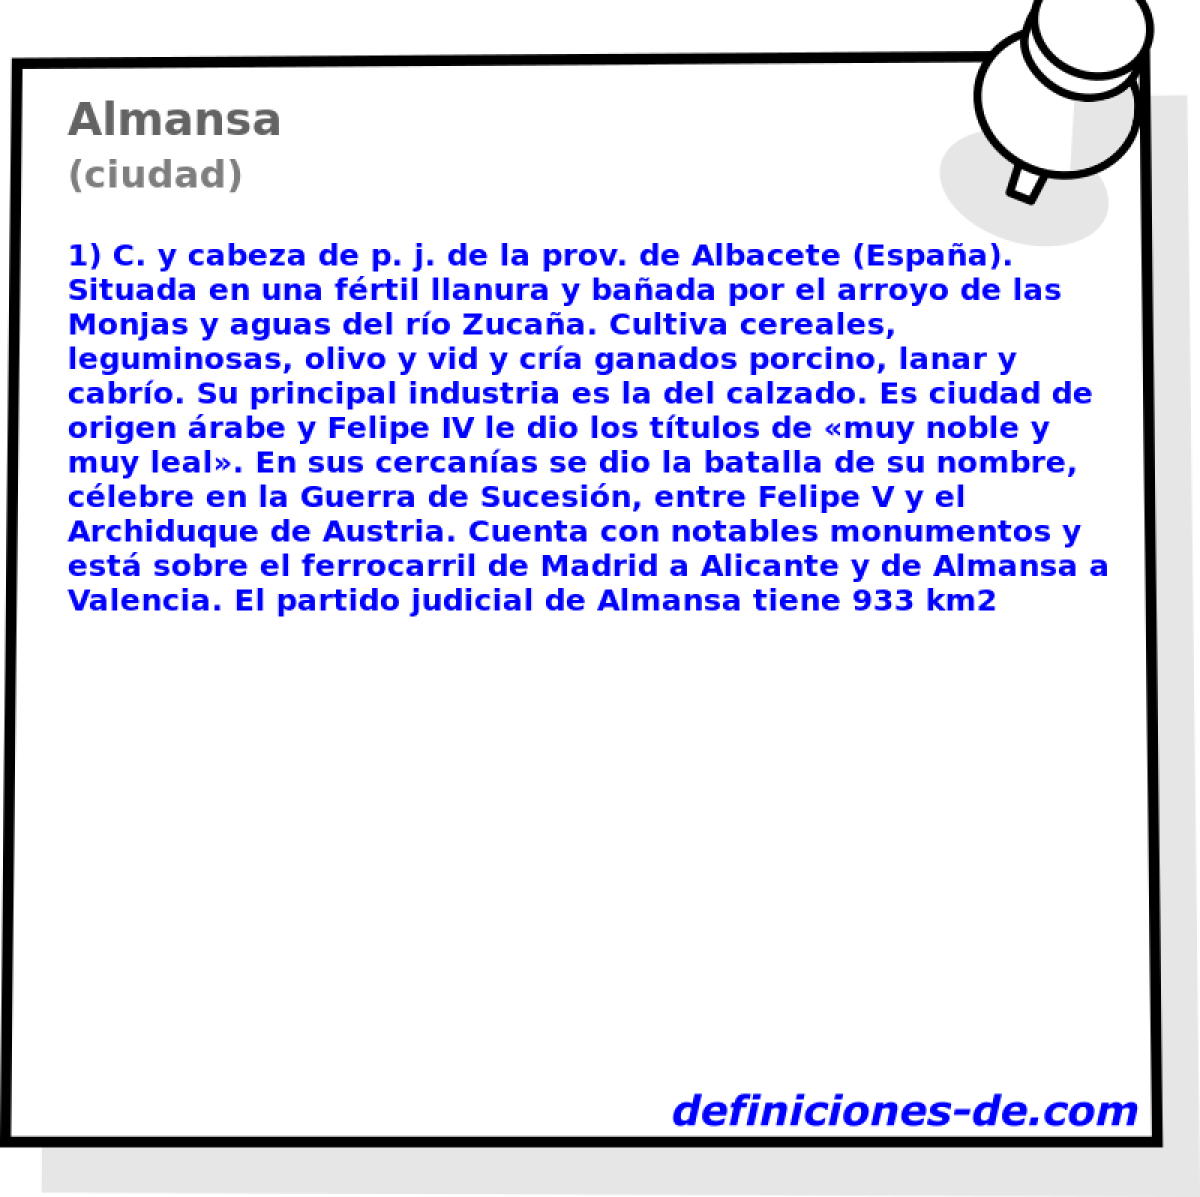 Almansa (ciudad)